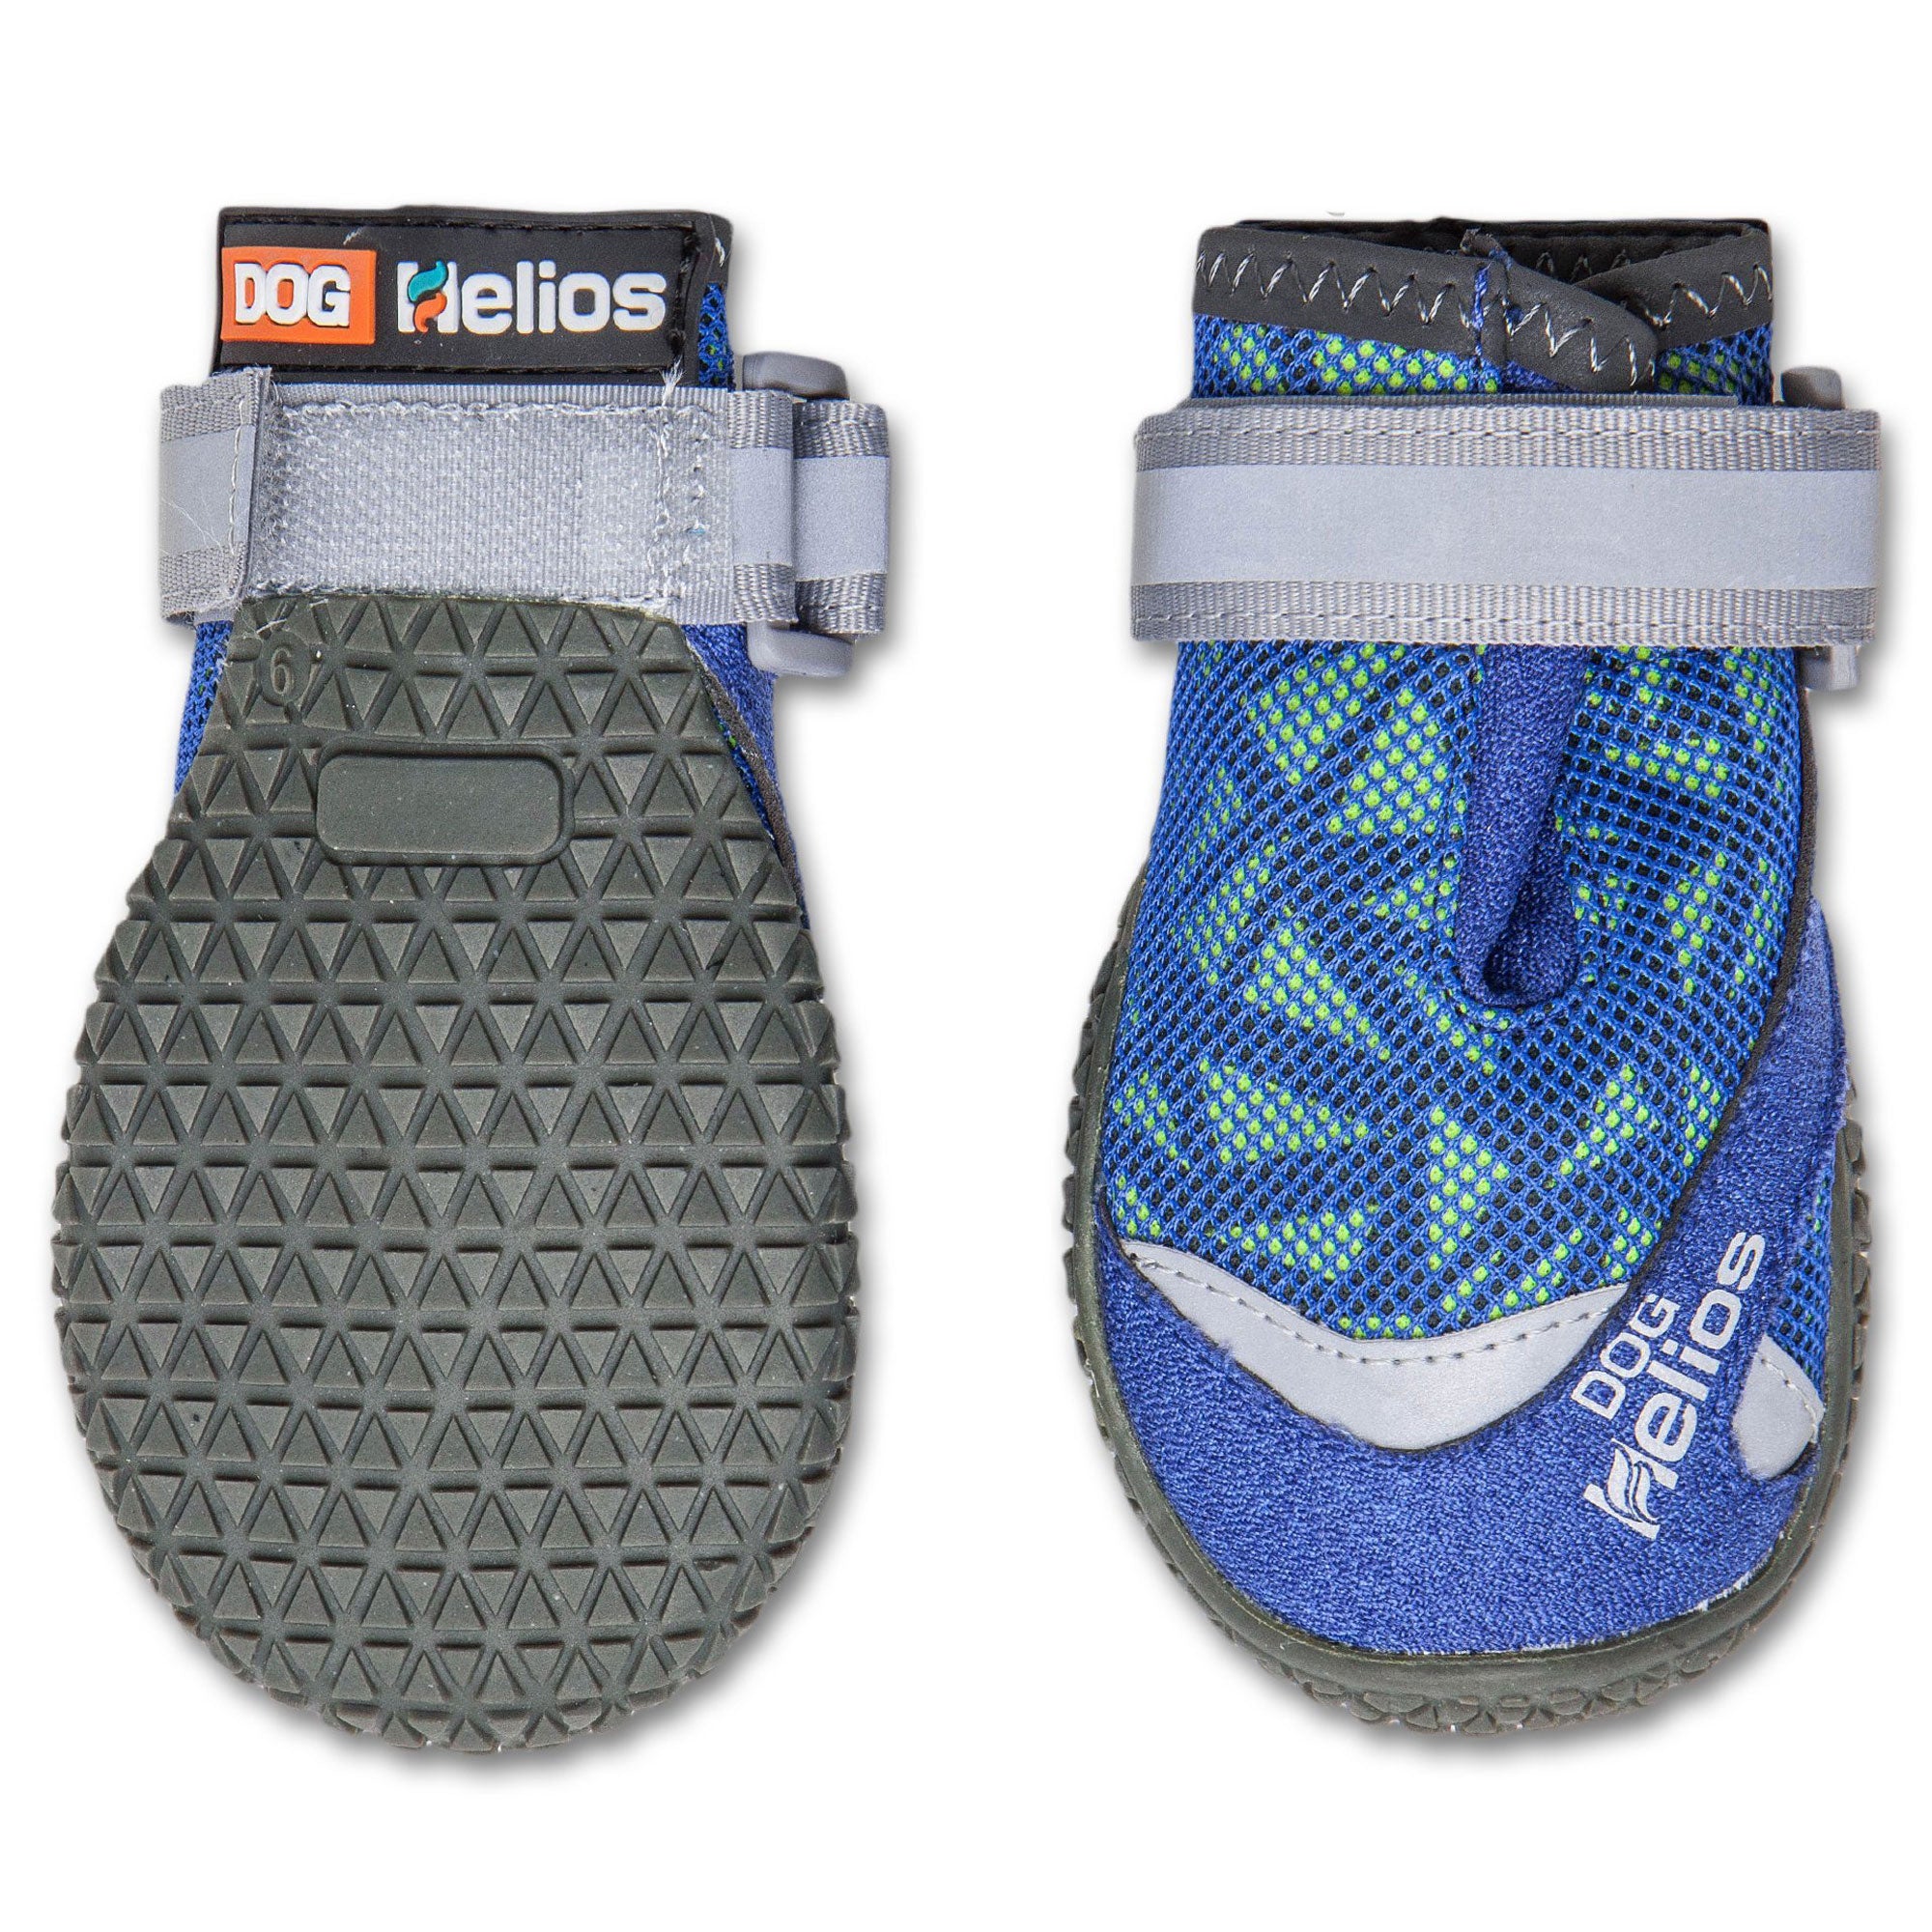 Dog Helios® Surface Performance Dog Shoes - Blue - Medium